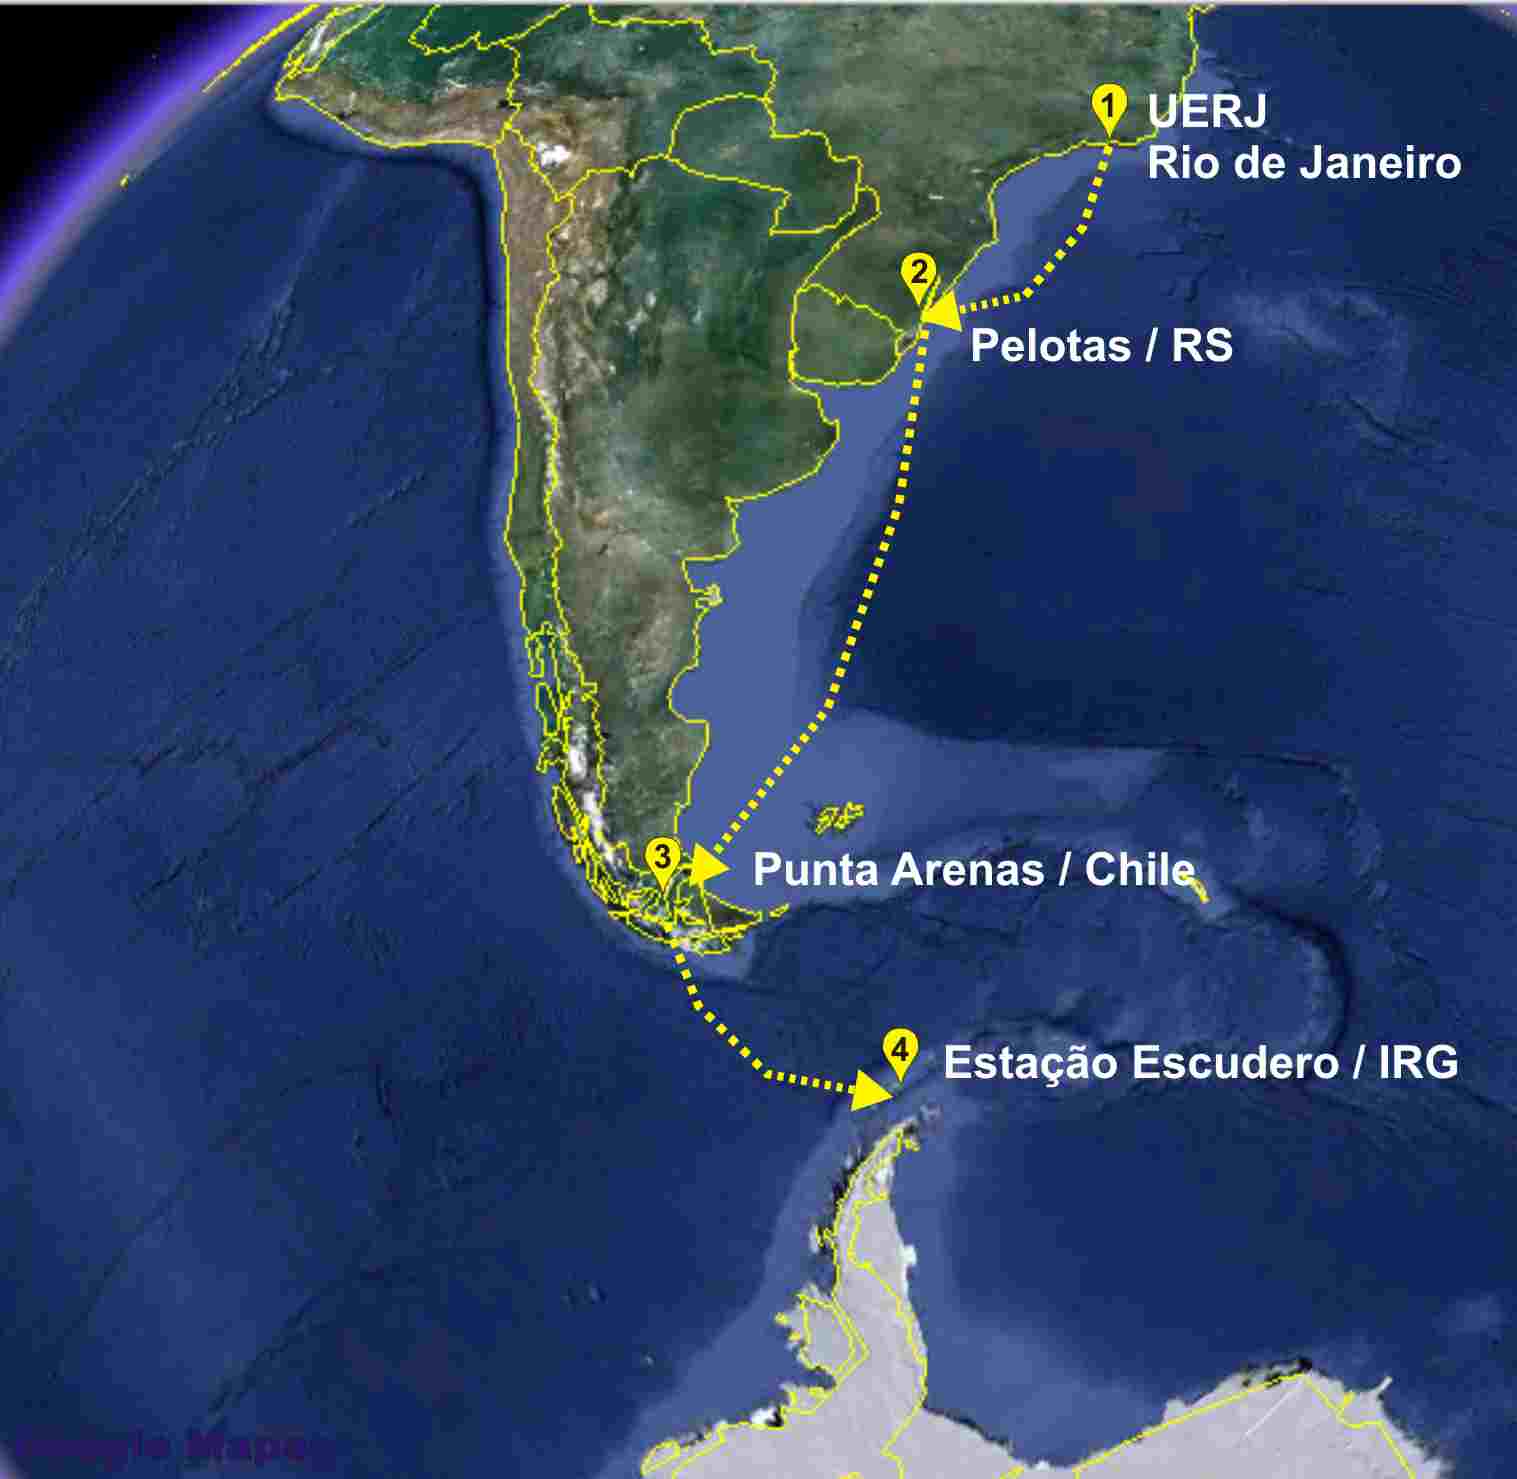 Percurso realizado pela equipe de pesquisa da UERJ a caminho da Ilha Rei George (IRG) na Península Antártica.